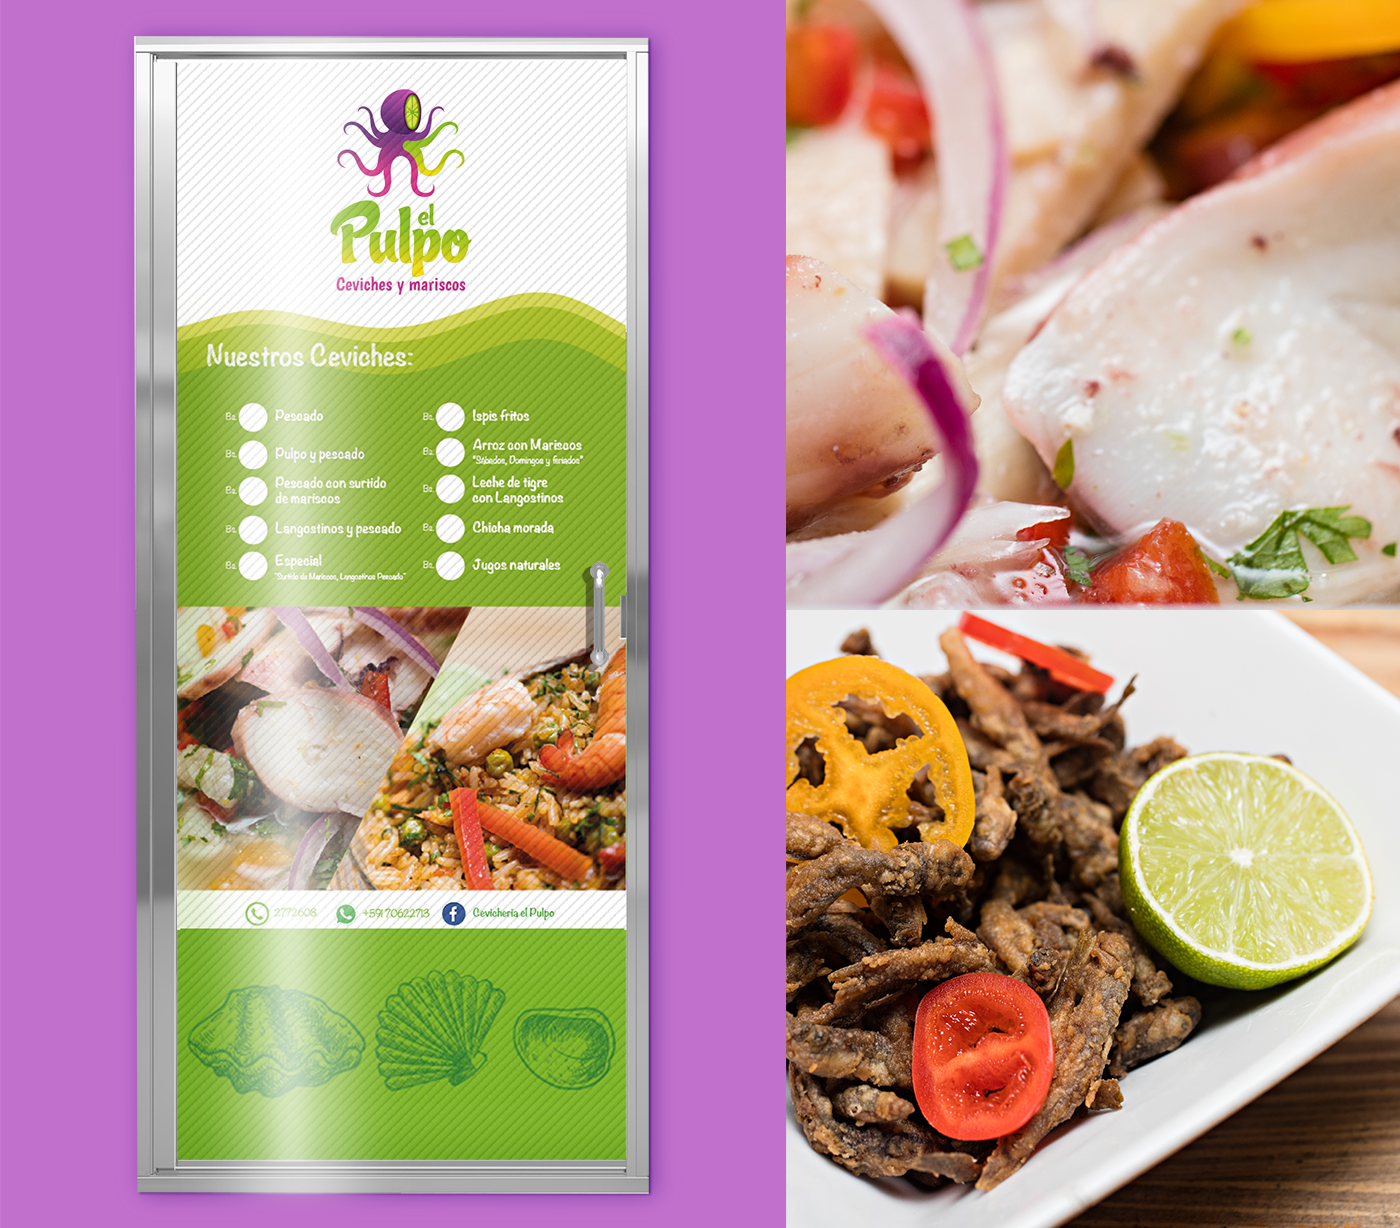 Food  branding  restaurant fish corporare image Packaging Designe logo Graphic designe